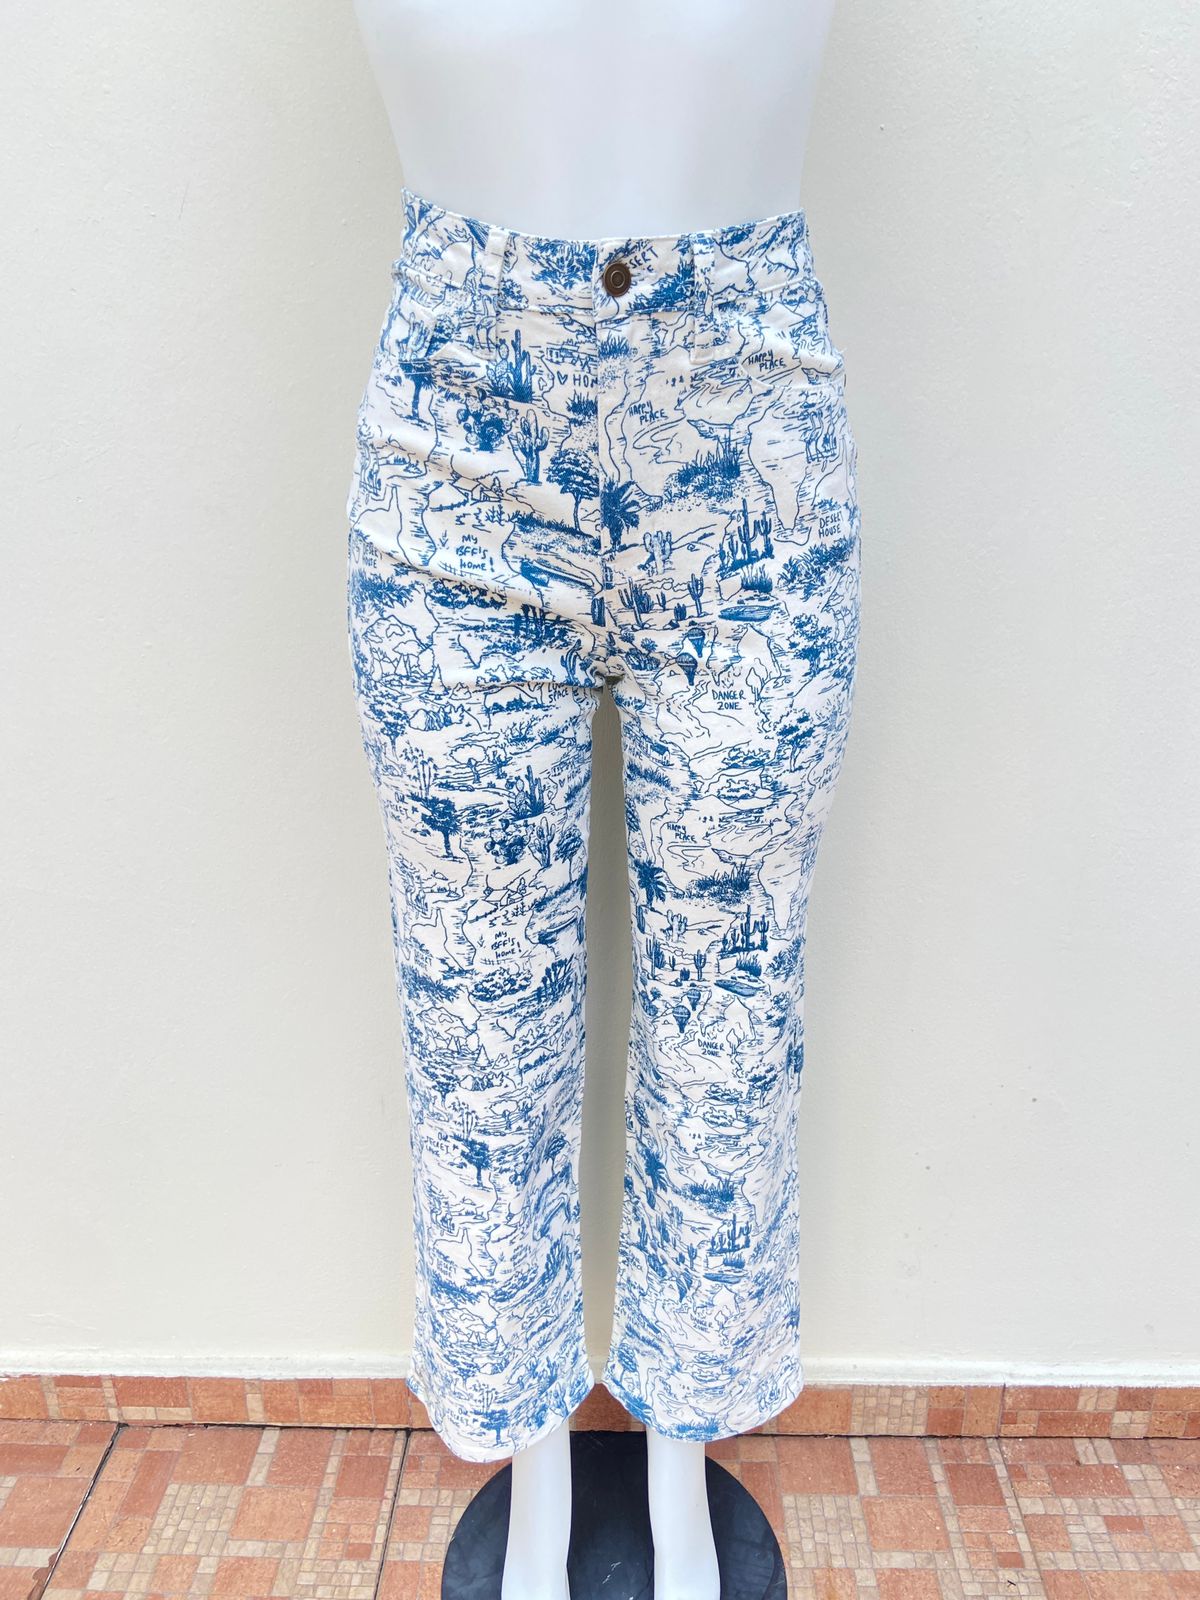 Pantalón Fashion Nova original jean color blanco con diseños azules, de cactus y palmeras.